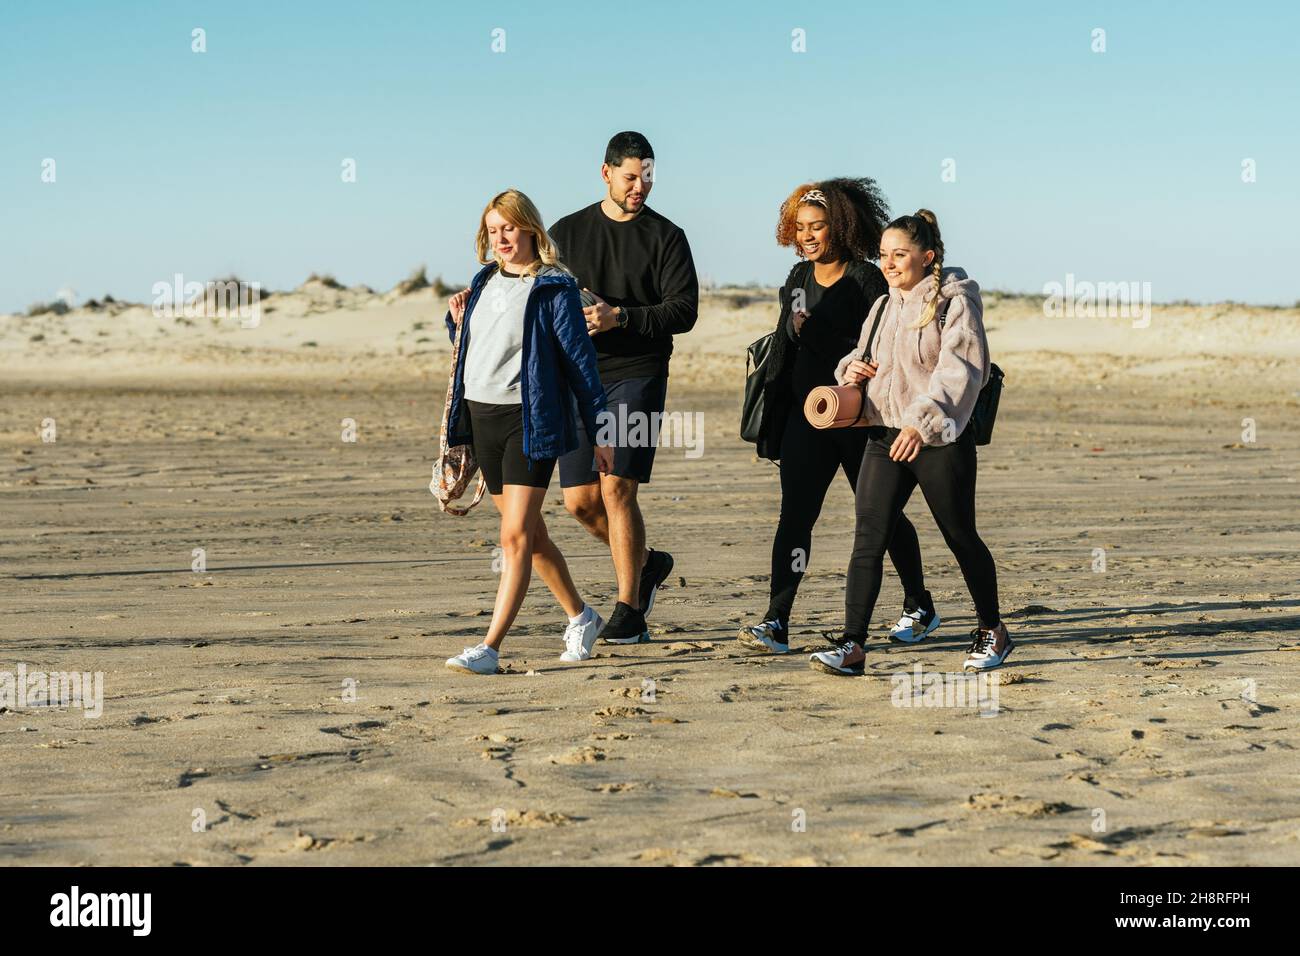 Instructeur de yoga et trois personnes multiethniques marchant sur la plage Banque D'Images